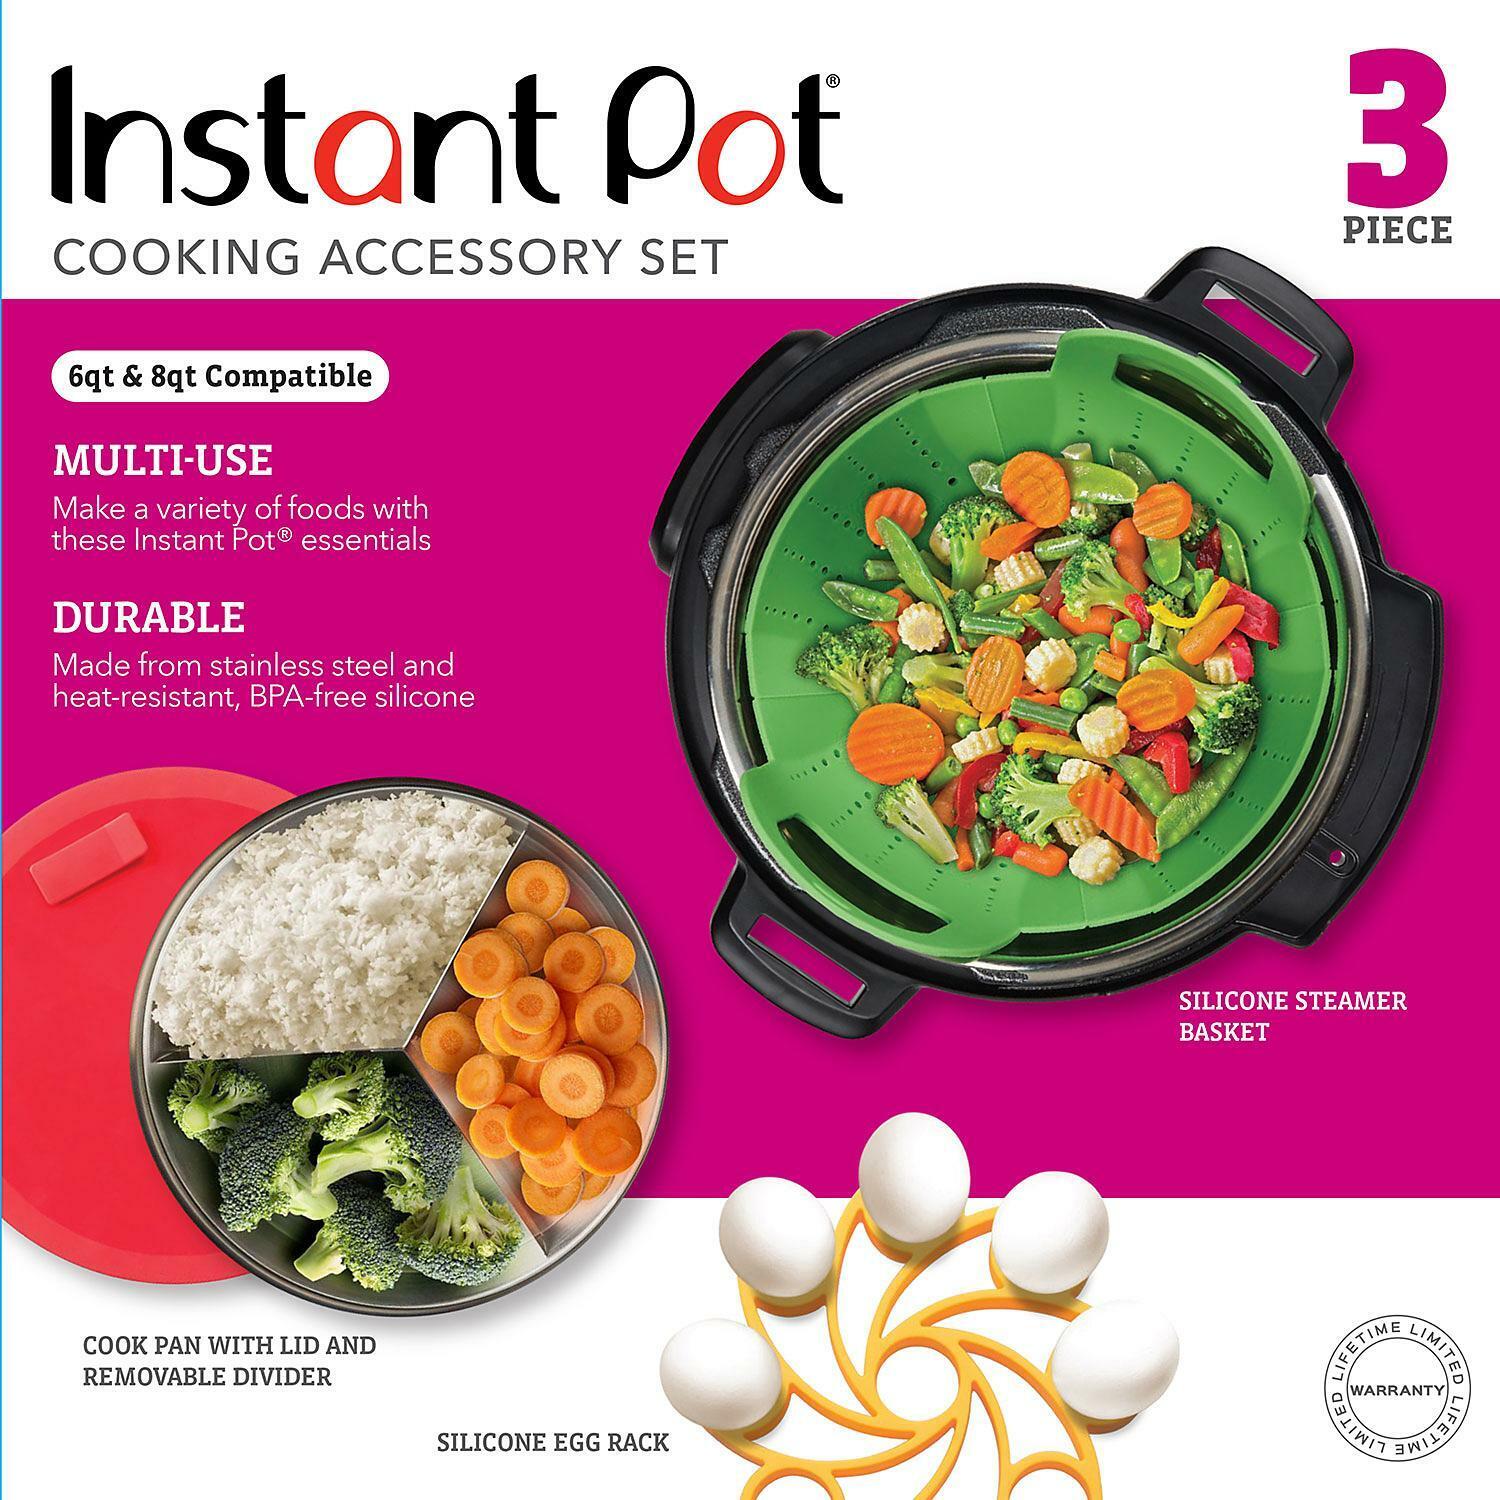 Instant Pot Cooking Accessory Set - 3 Piece 6qt & 8qt Compatible! GA